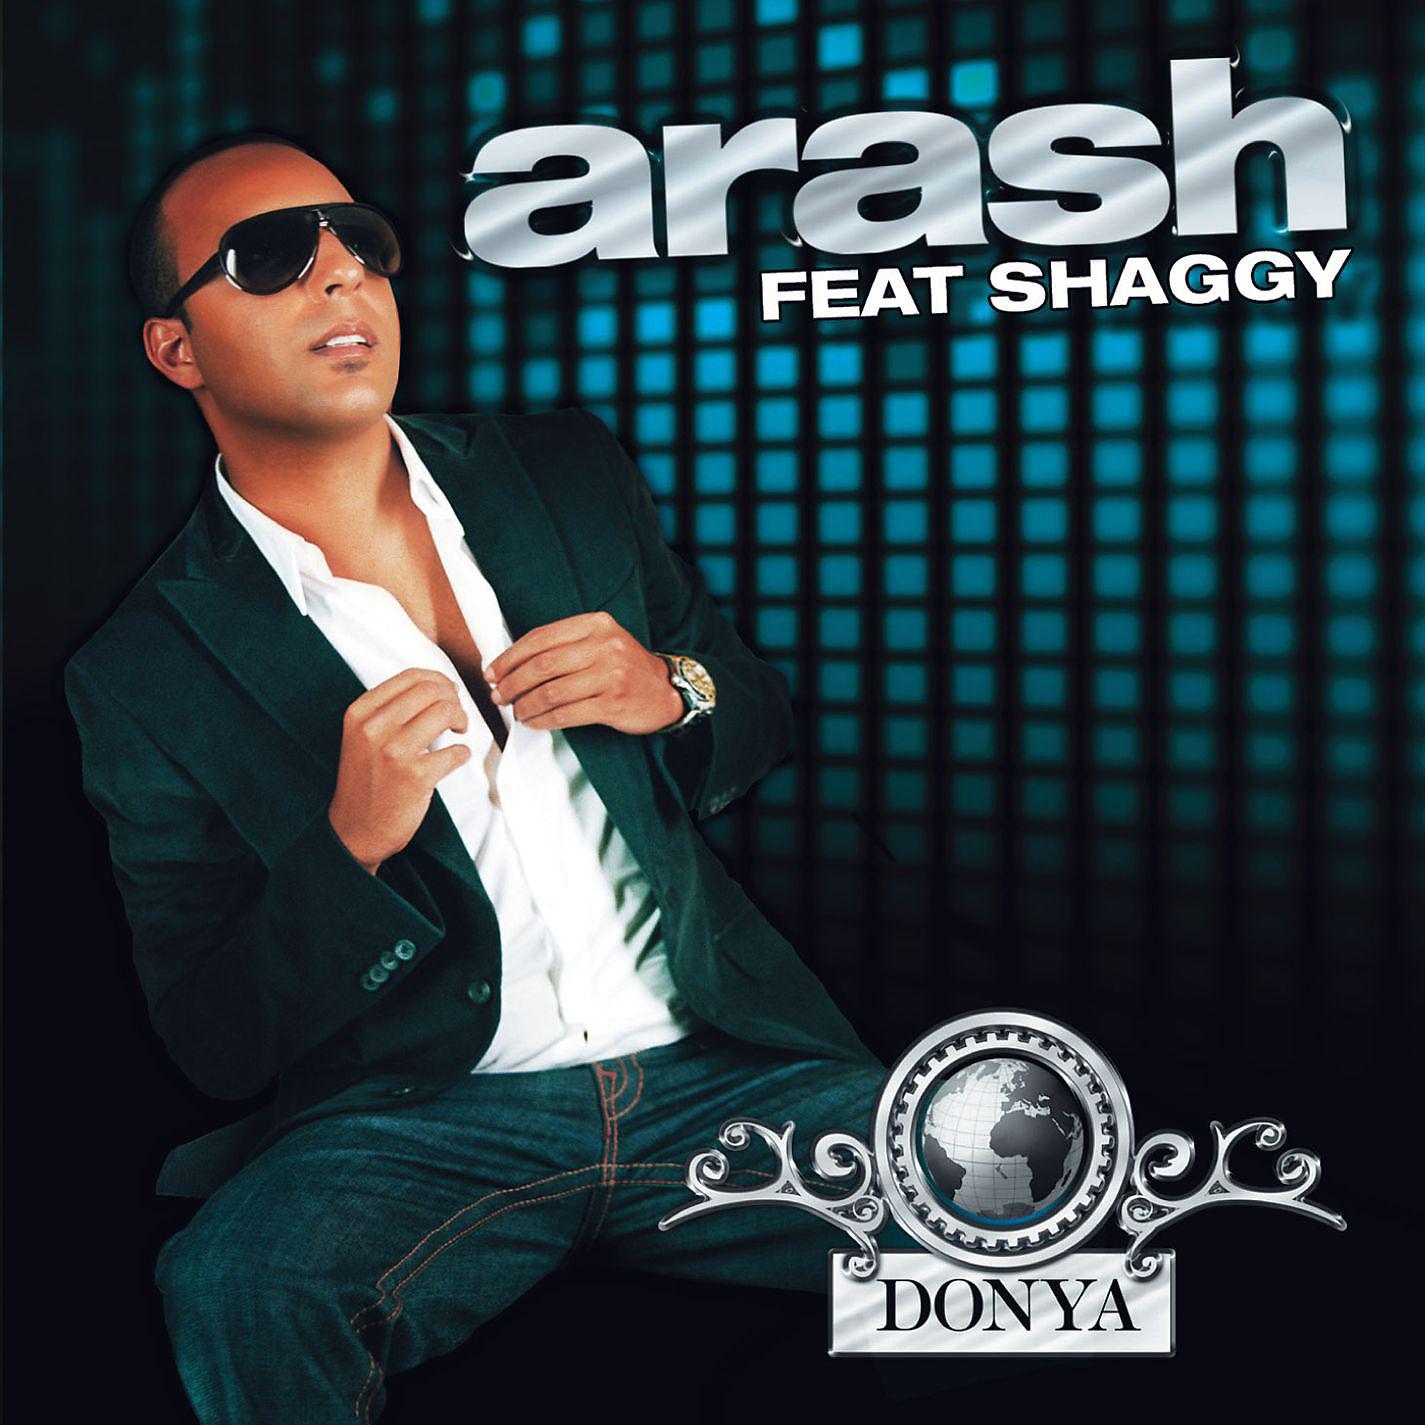 Араша broken. Араш обложки. Arash Donya. Arash feat Shaggy Donya. Араш альбомы.